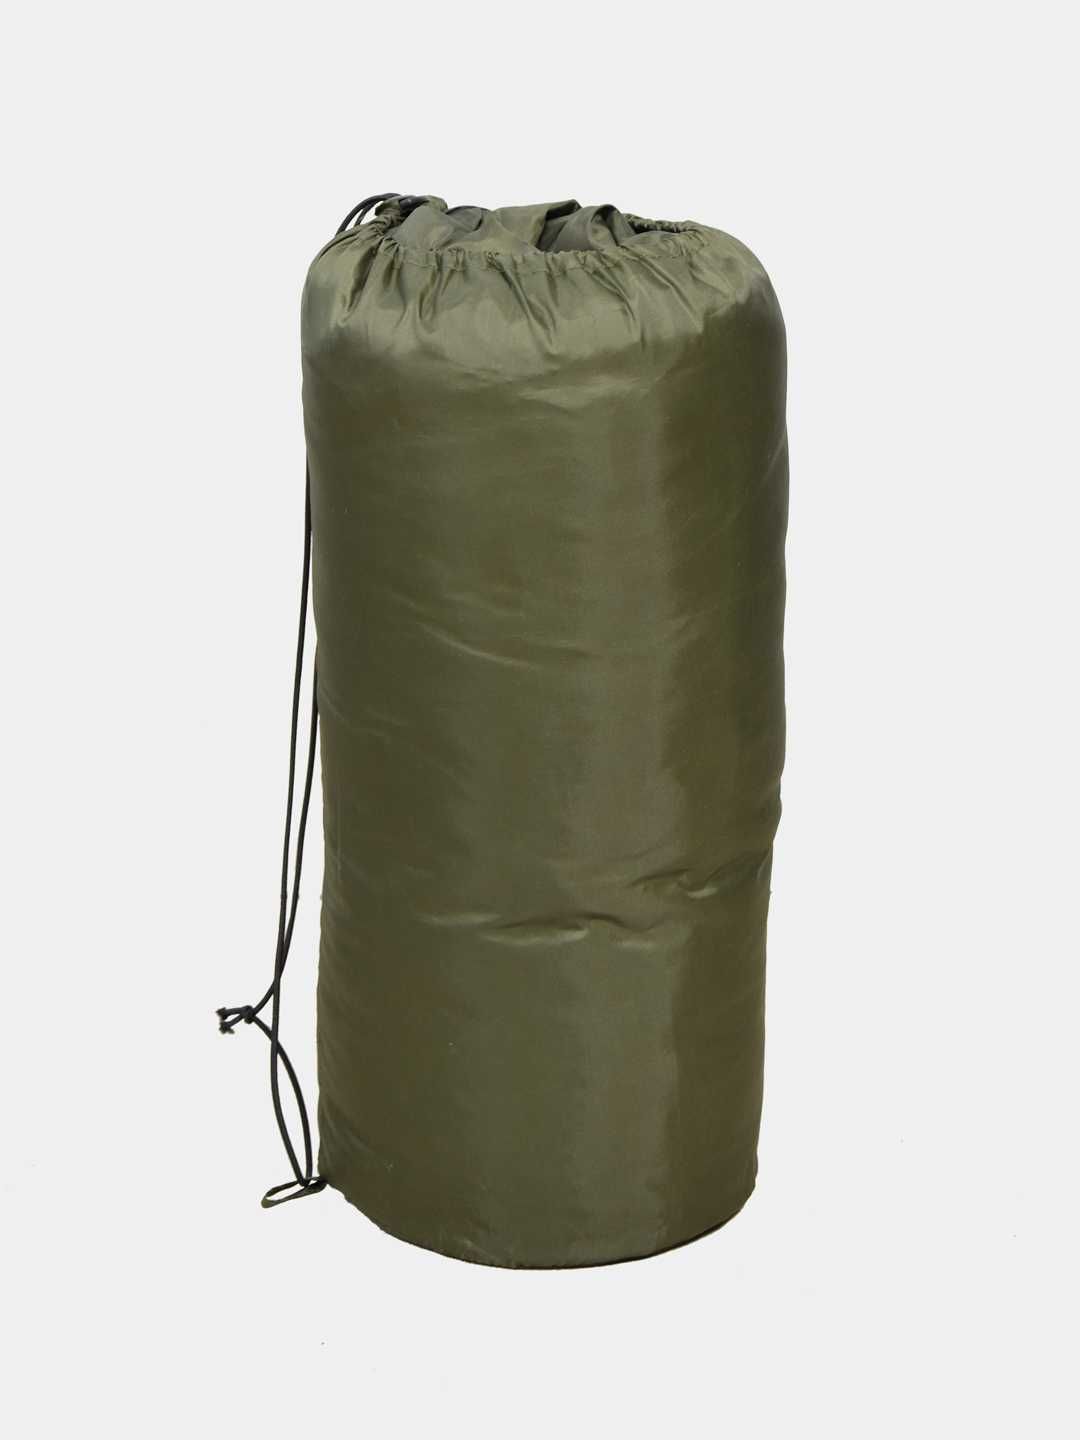 Летний спальный мешок для спорта или активного отдыха на природе